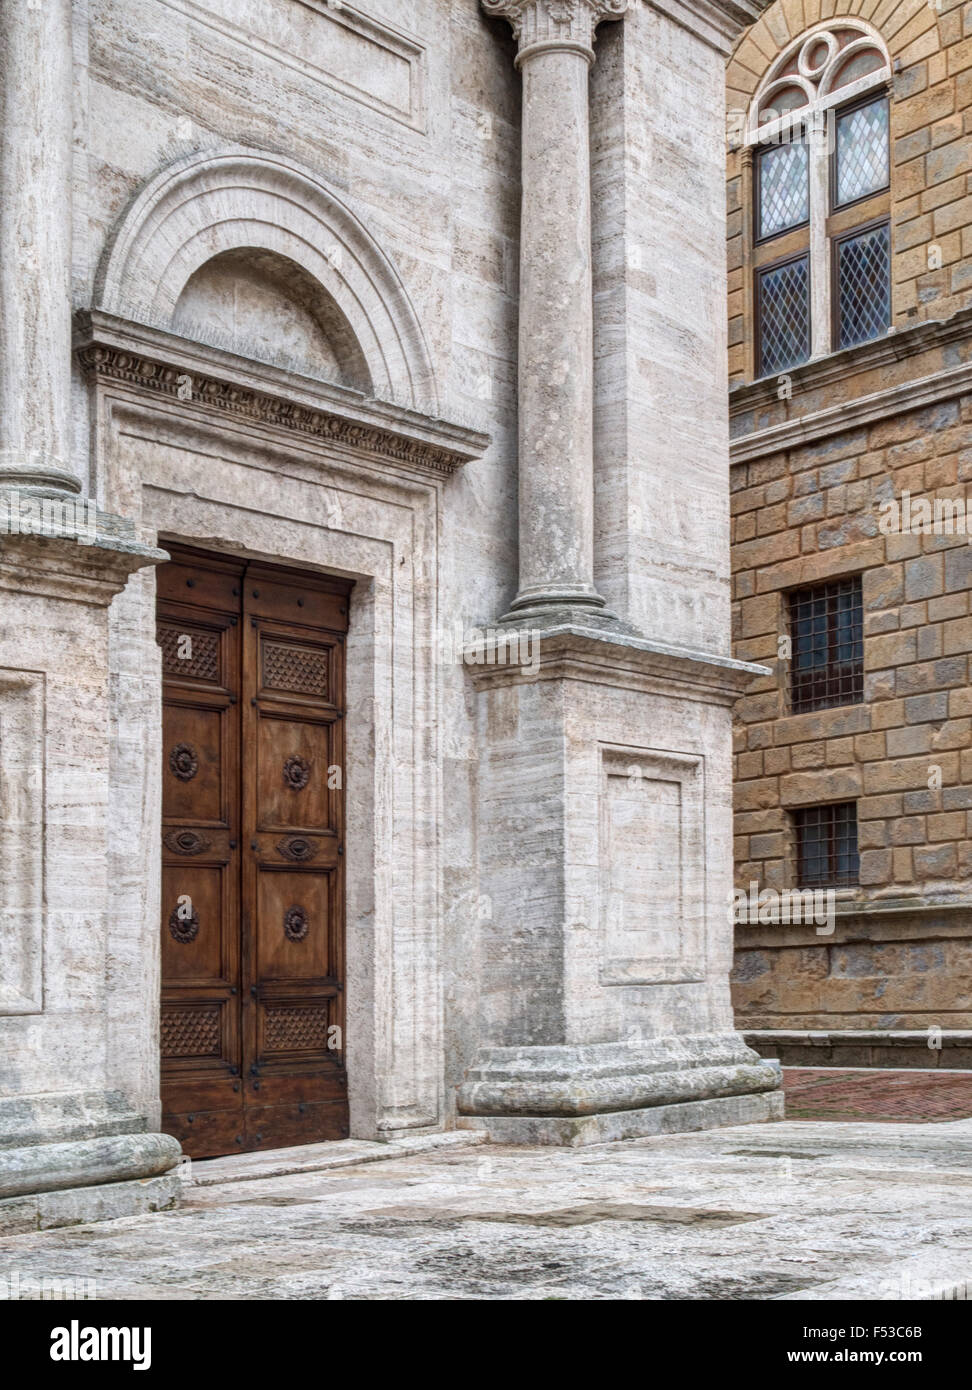 Europa, Italien, Toskana, Pienza.  Eines der Eingangstüren die Kathedrale Santa Maria Assunta in den wichtigsten Platz von Pienza, Piazza Pio II. Stockfoto